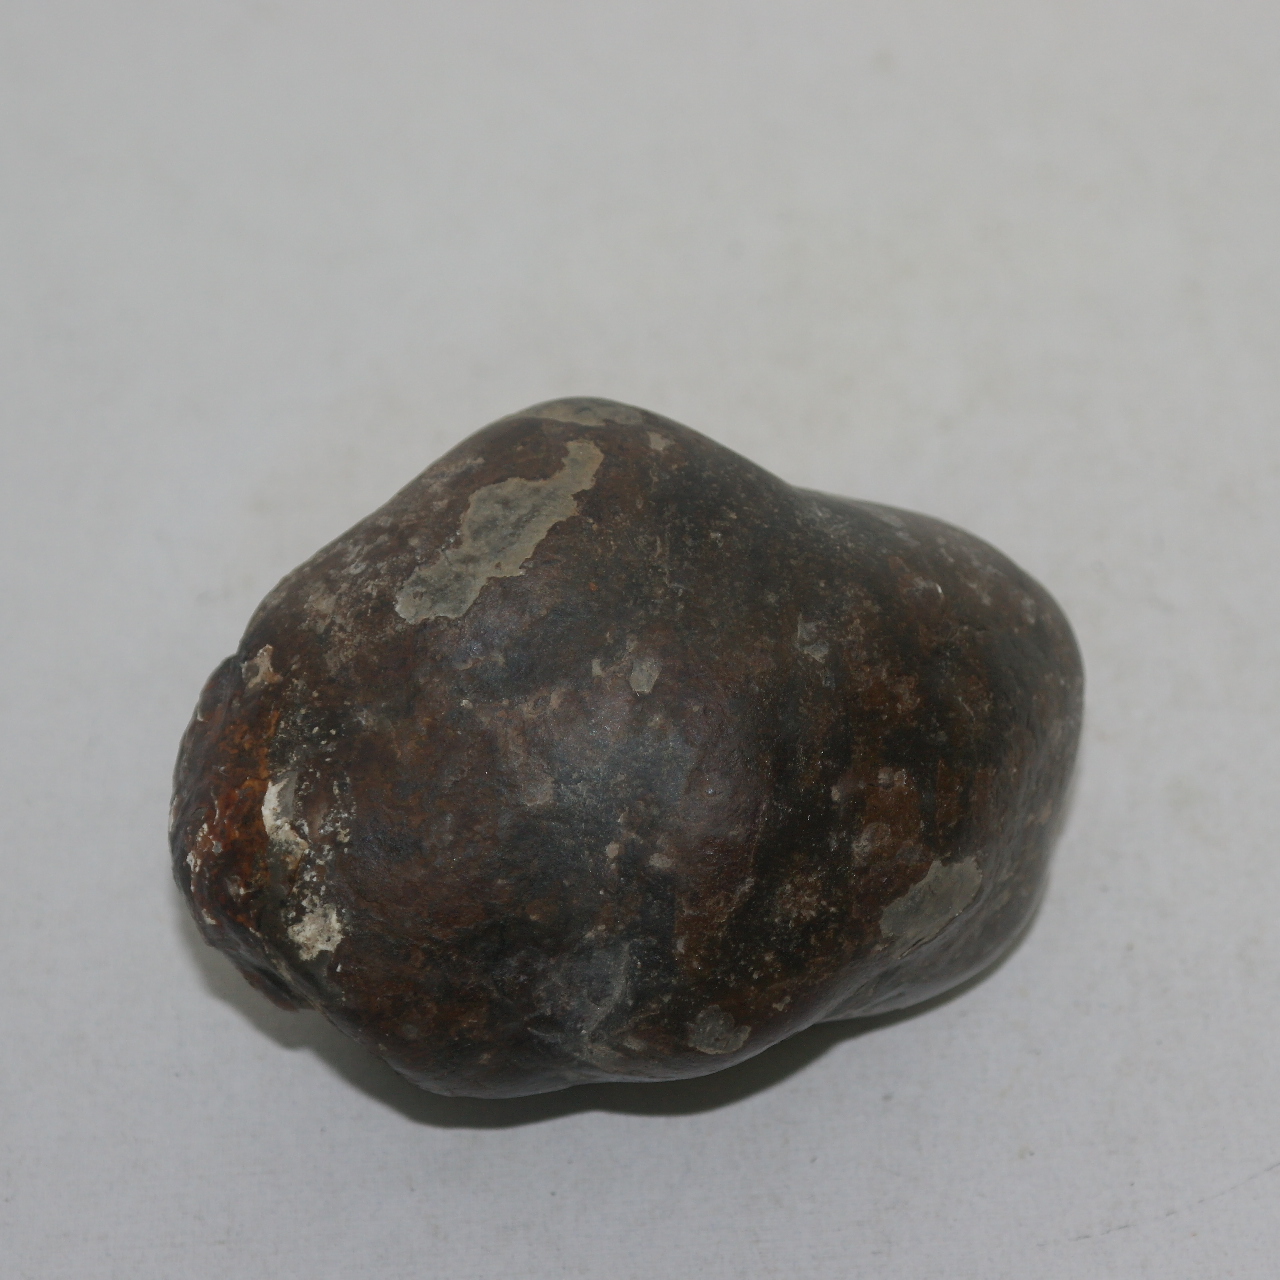 운석으로 보이는 특이한 돌